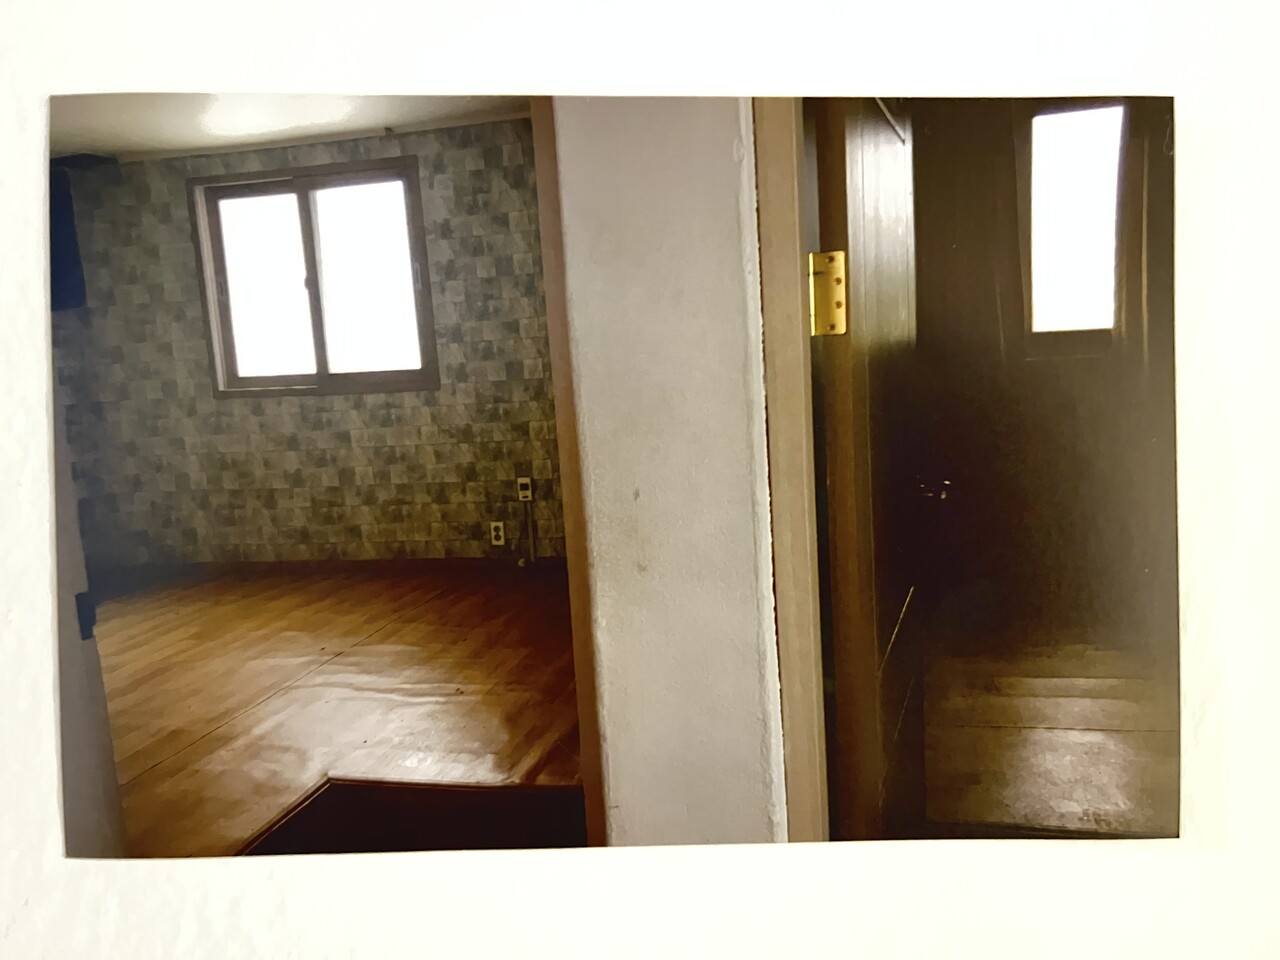 카페 지구대 2층에 있는 과거 숙직실과 파출소장실(오른쪽)의 새 활용 전 모습. 양혁규 기자